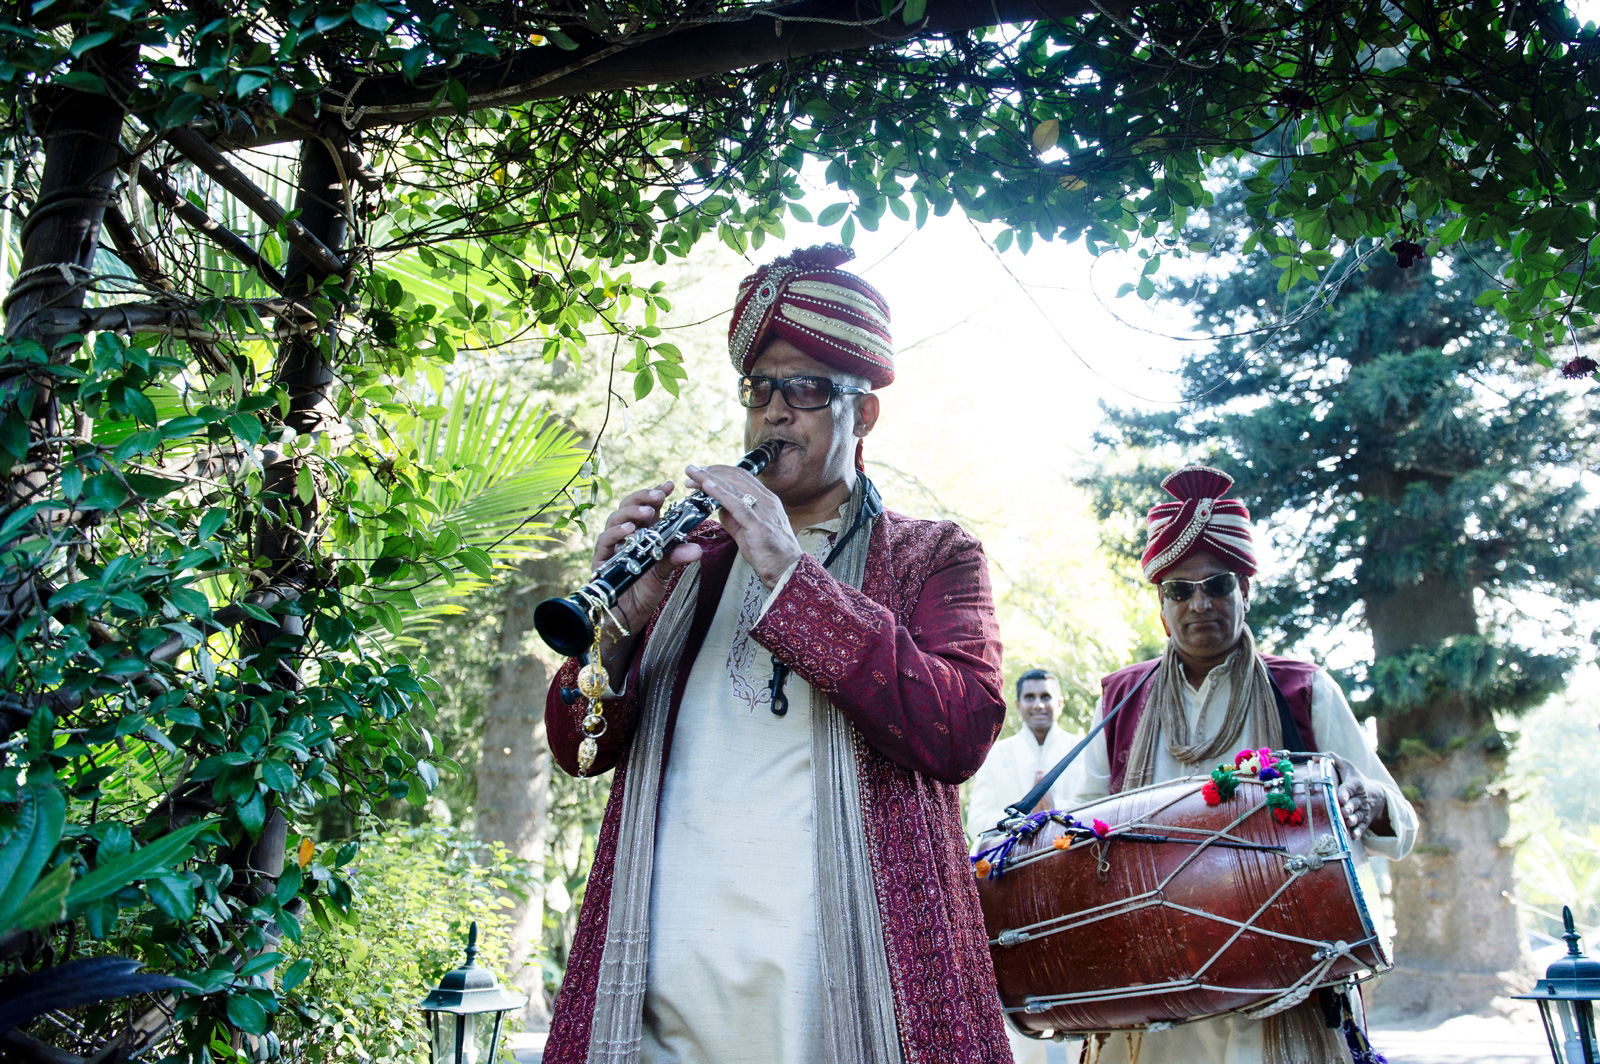 hindu music at wedding